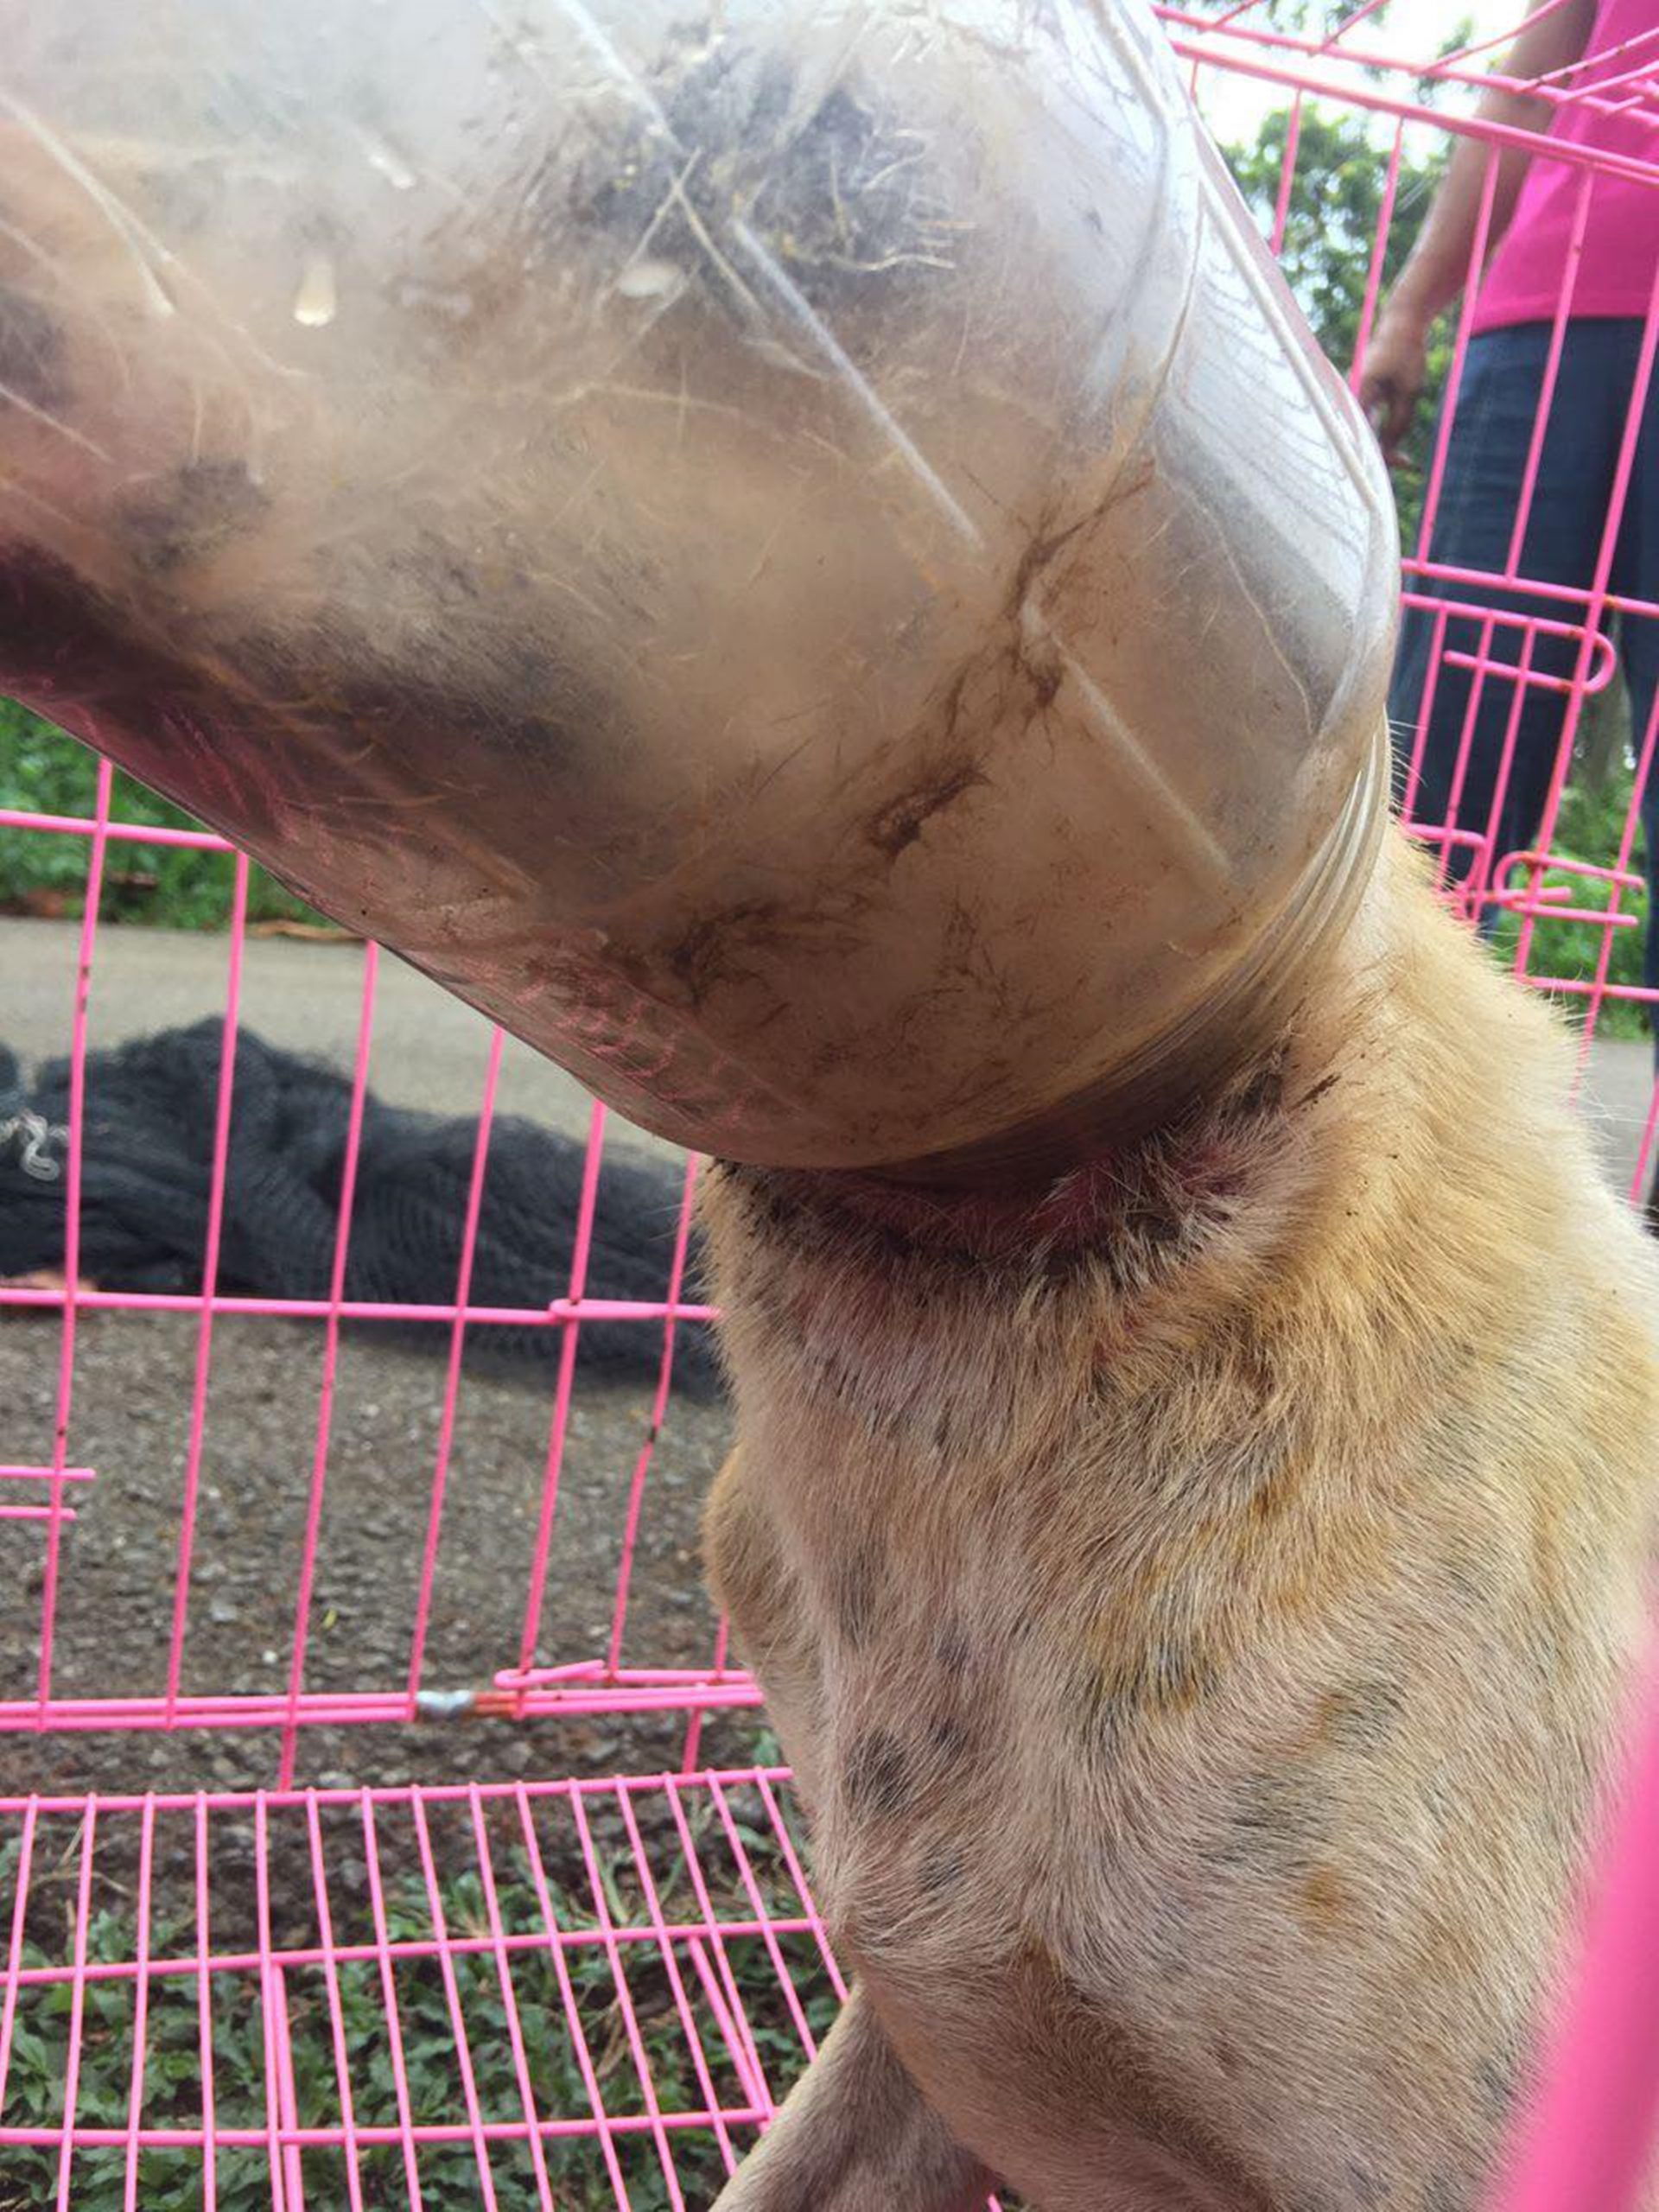 东10头：塑料桶套头6天无法进食，爱护动物组织联手拯救陷困流浪狗。